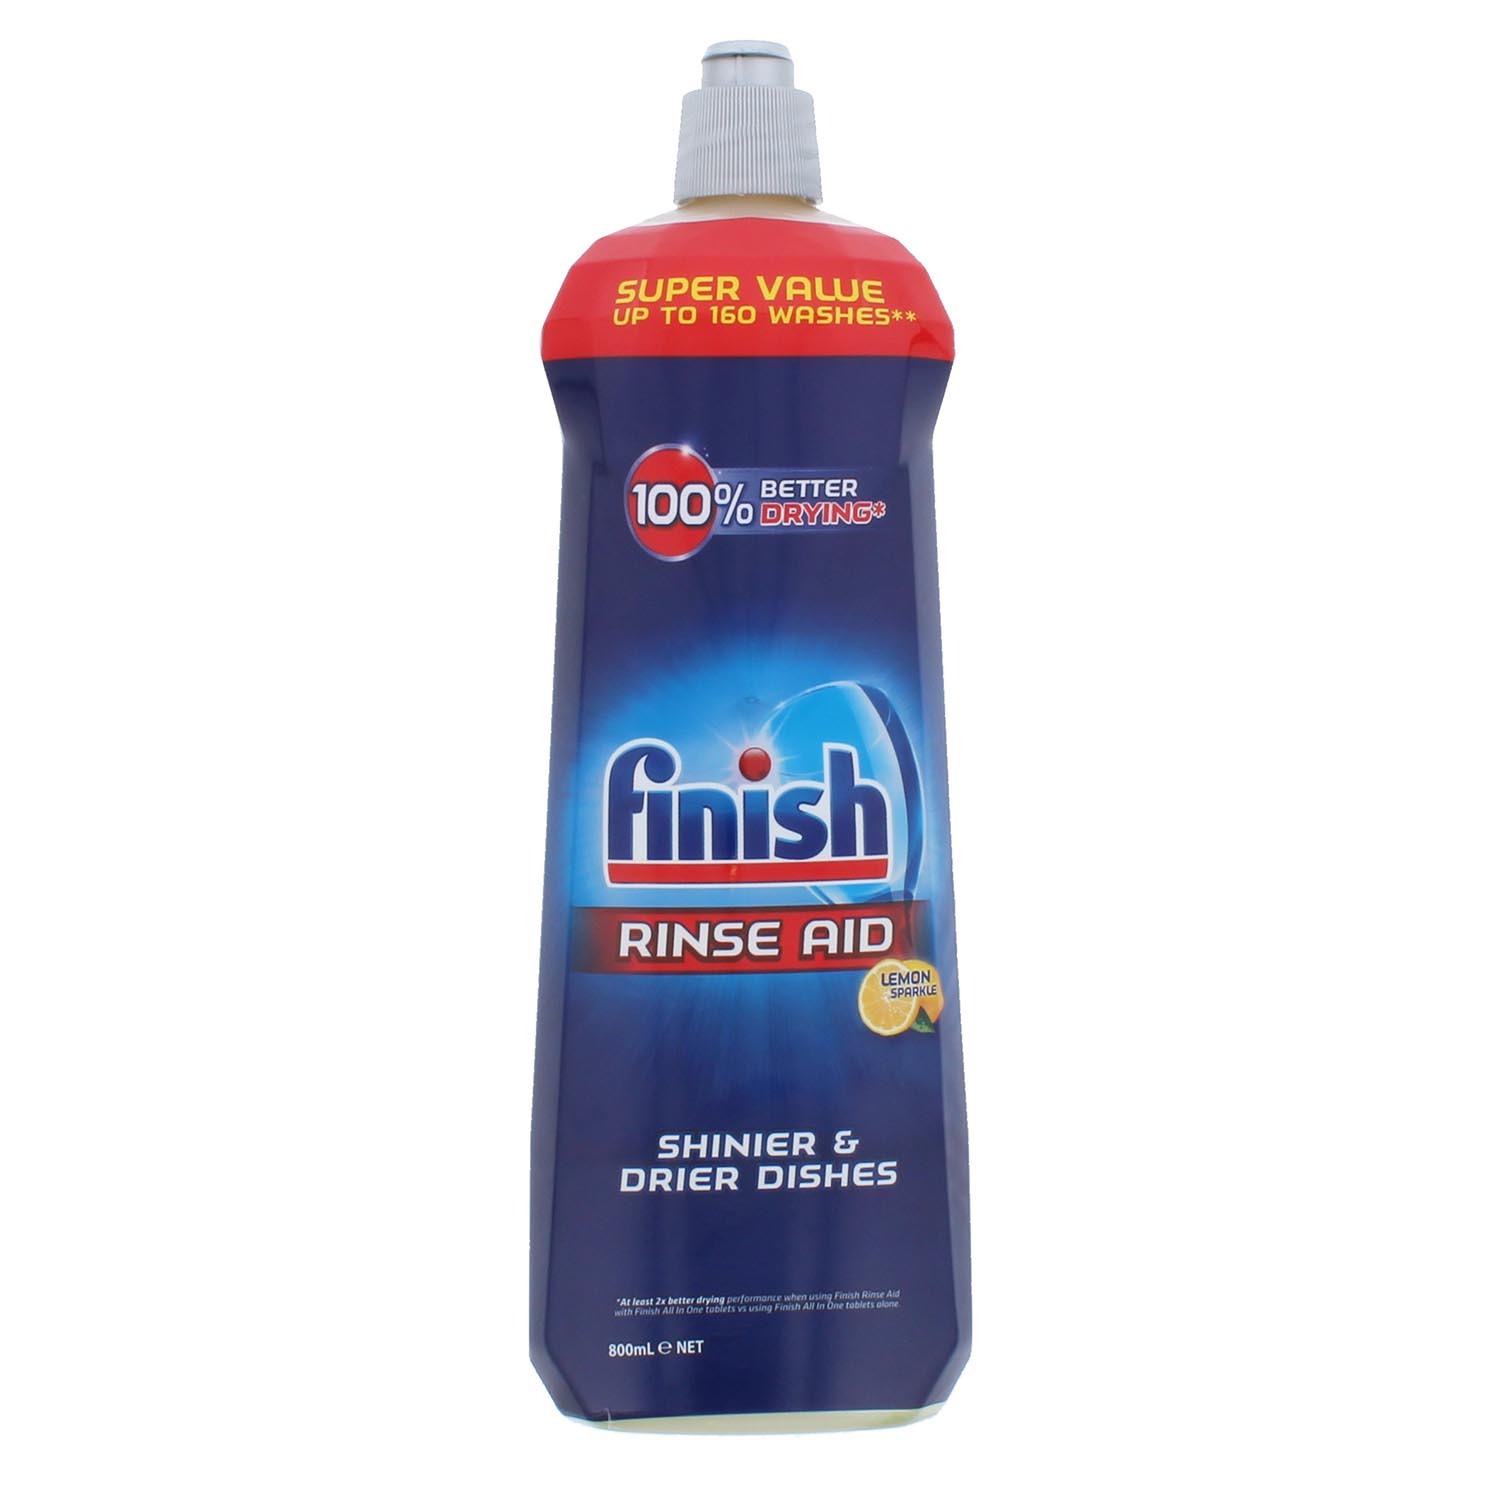 Finish Rinse Aid Lemon - 800ml Image